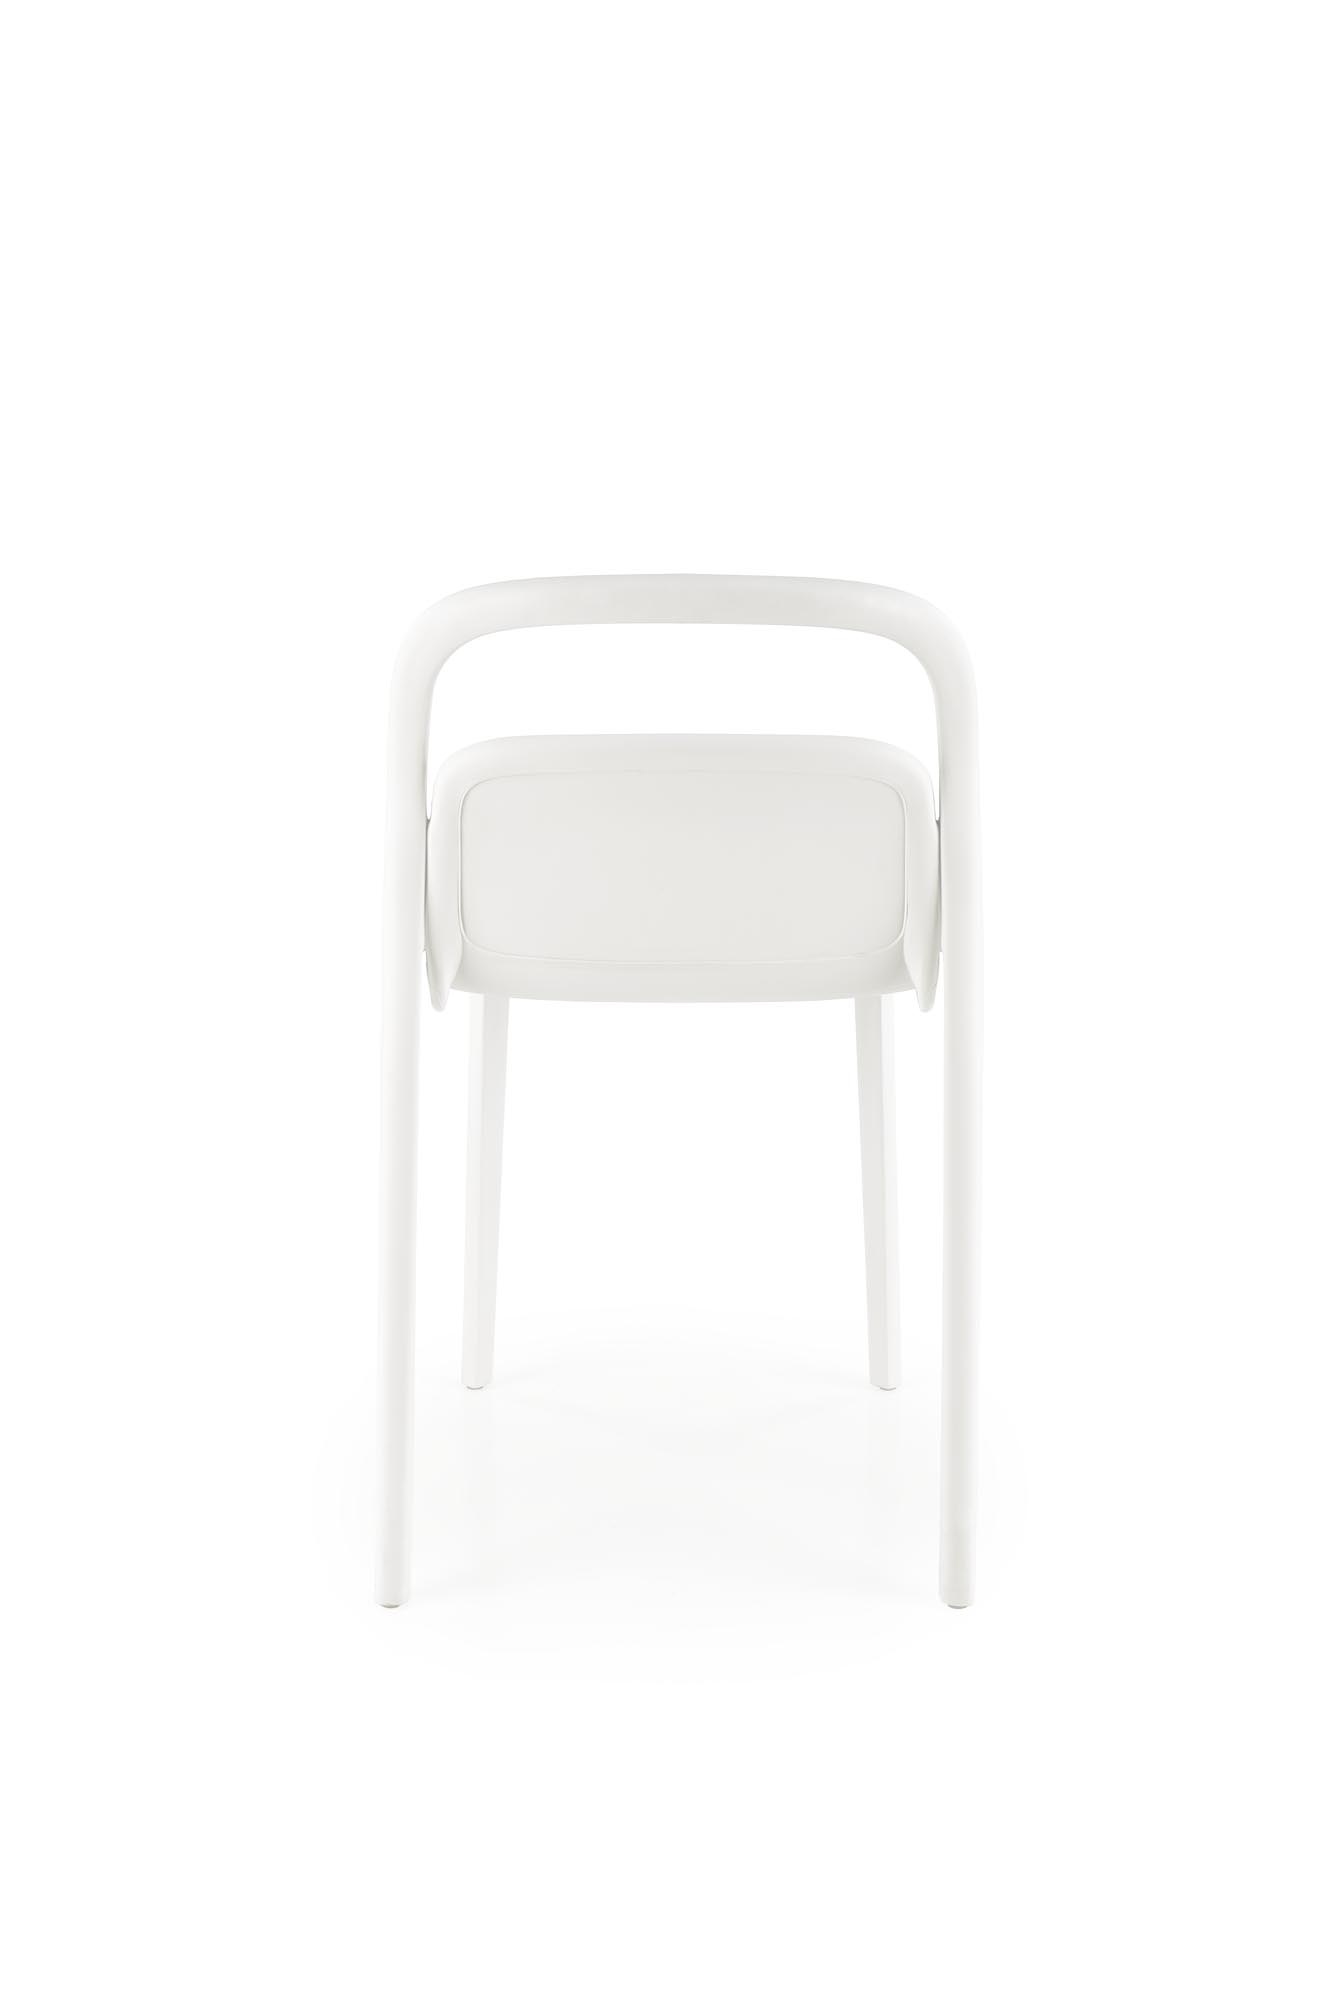 K490 Židle plastik Bílý (1p=4szt) Židle z tworzywa sztucznego k490 - Bílý